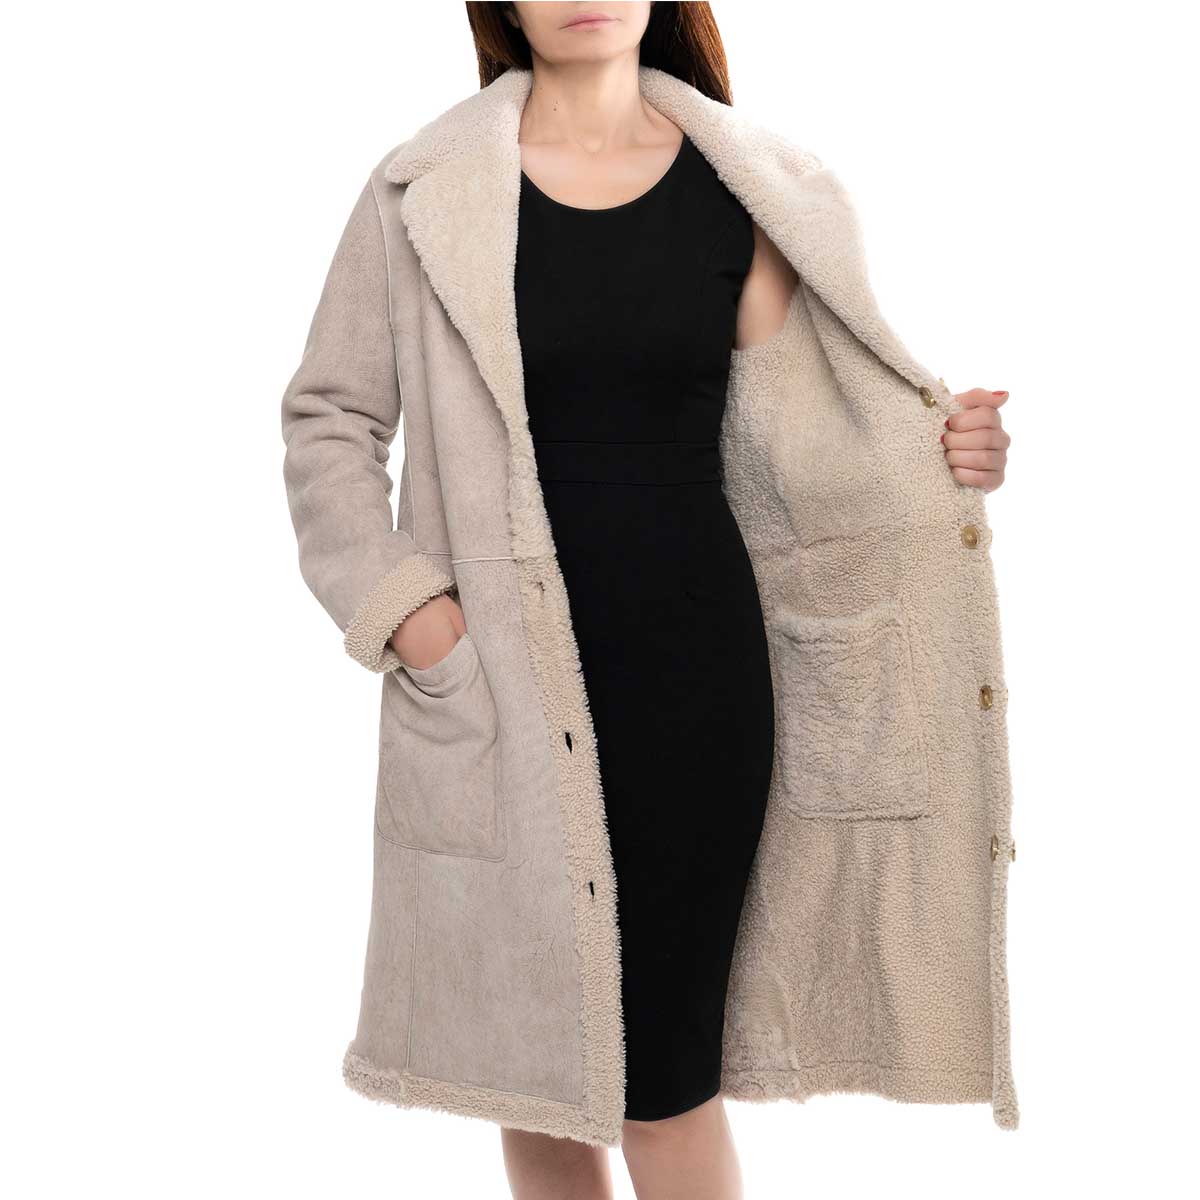 Beige women's long double-breasted reversible coat